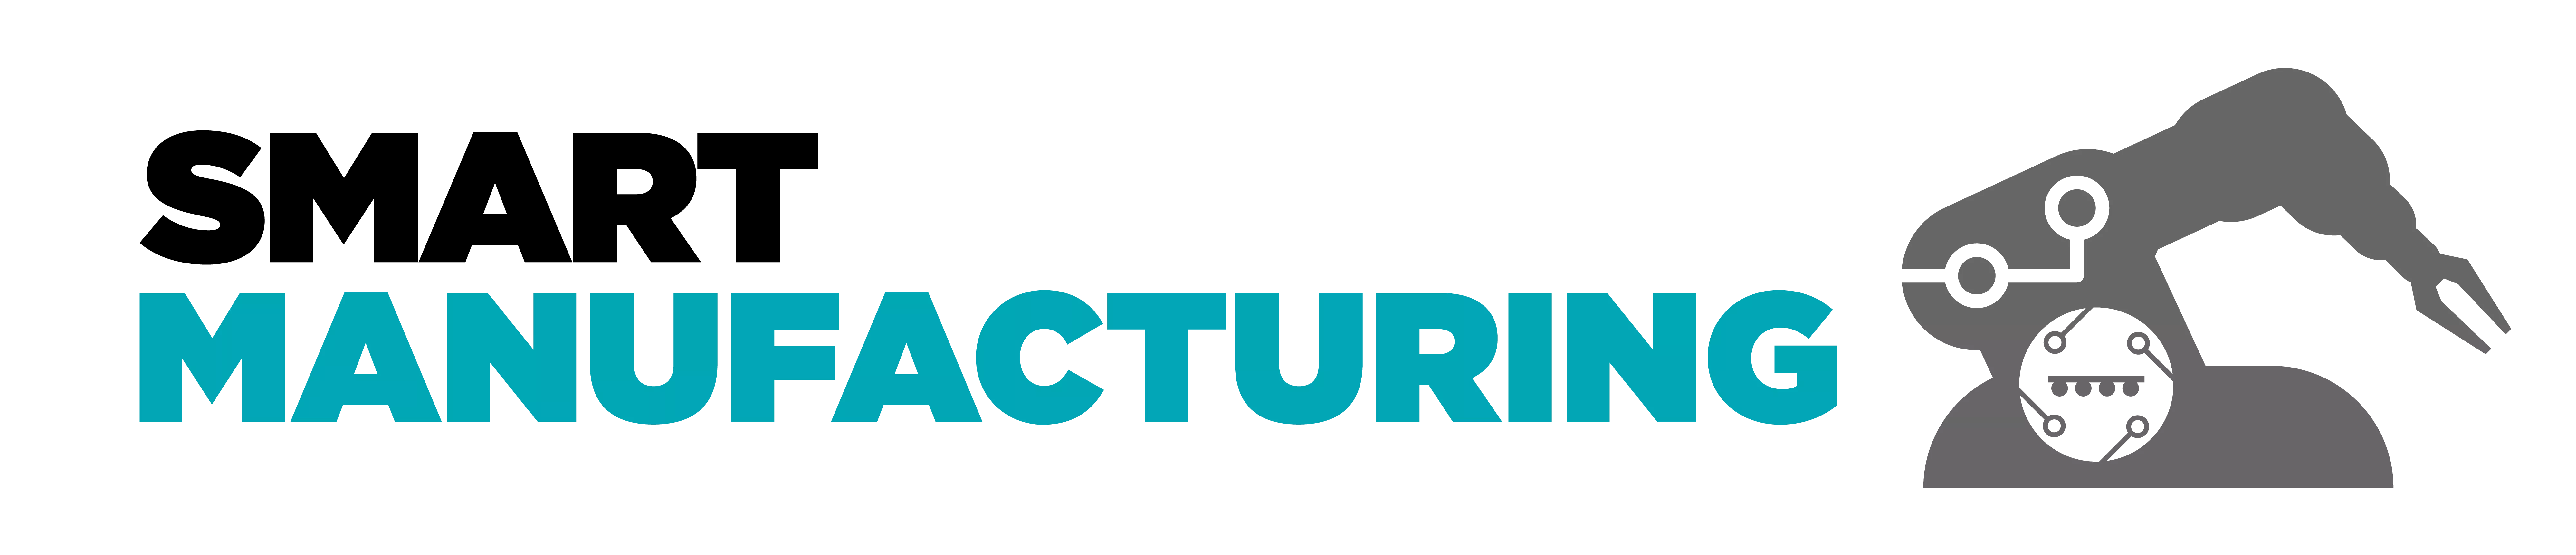 Smart Manufacturing logo